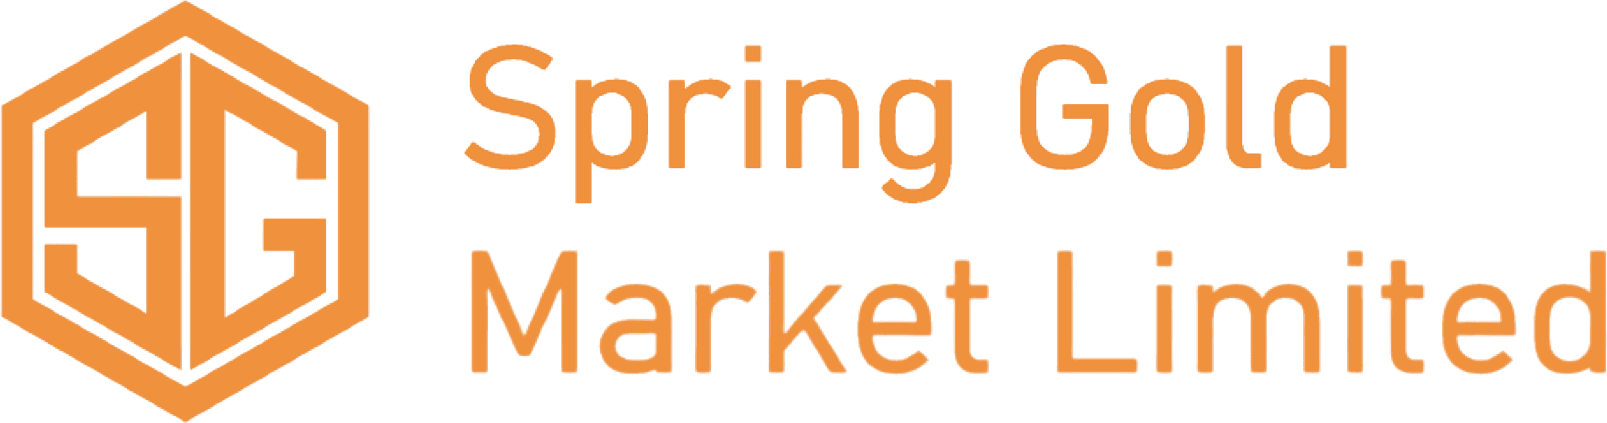 Spring Gold Market Limited